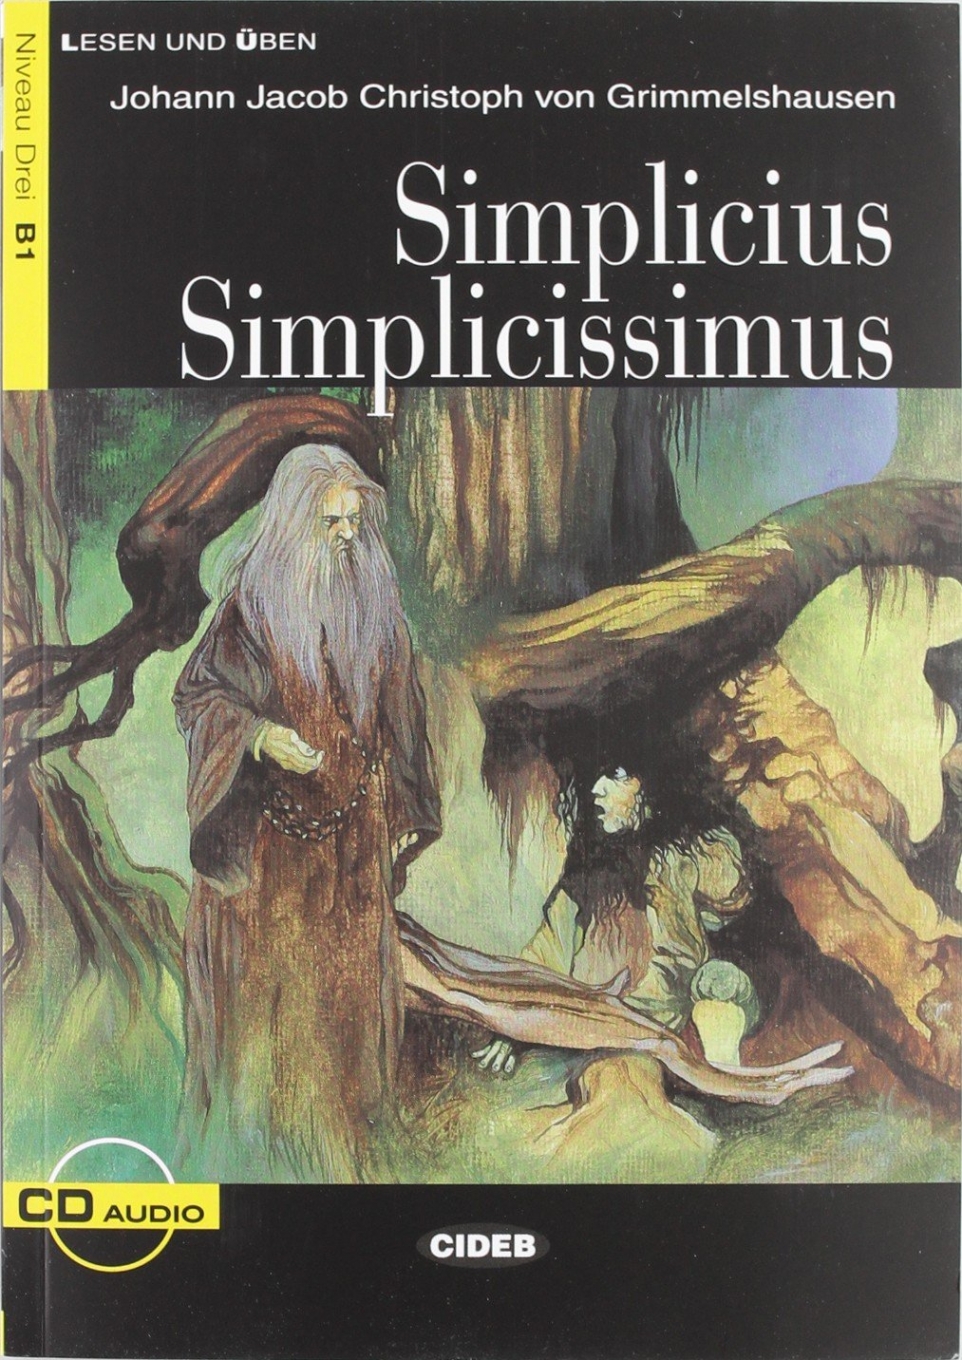 Johann Jacob Christoph von Grimmelshausen Lesen und Uben Niveau Drei (B1) Simplicius Simplicissimus + CD 